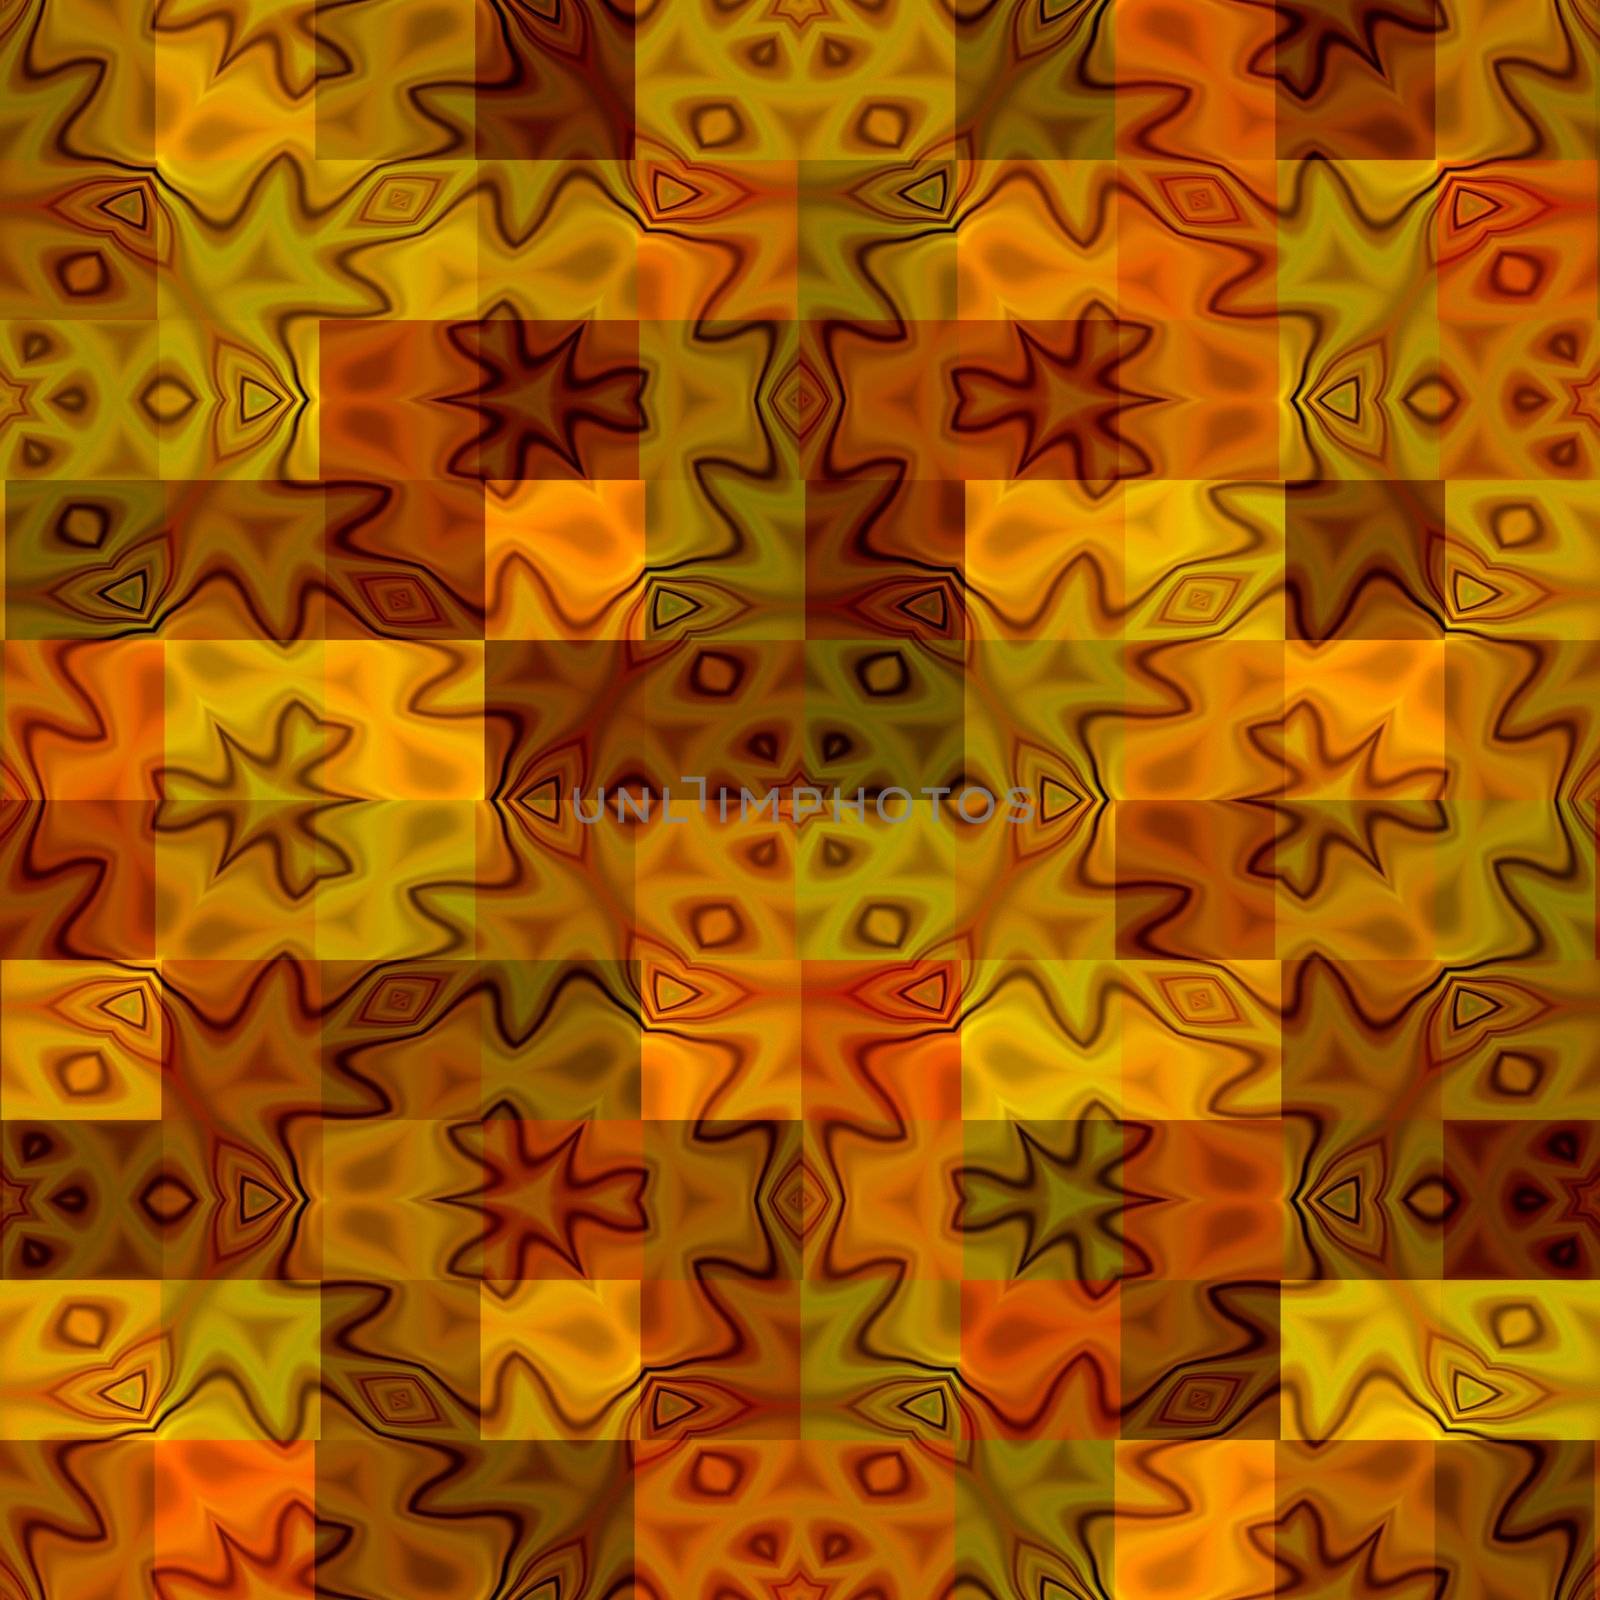 warm batik rags pattern by weknow